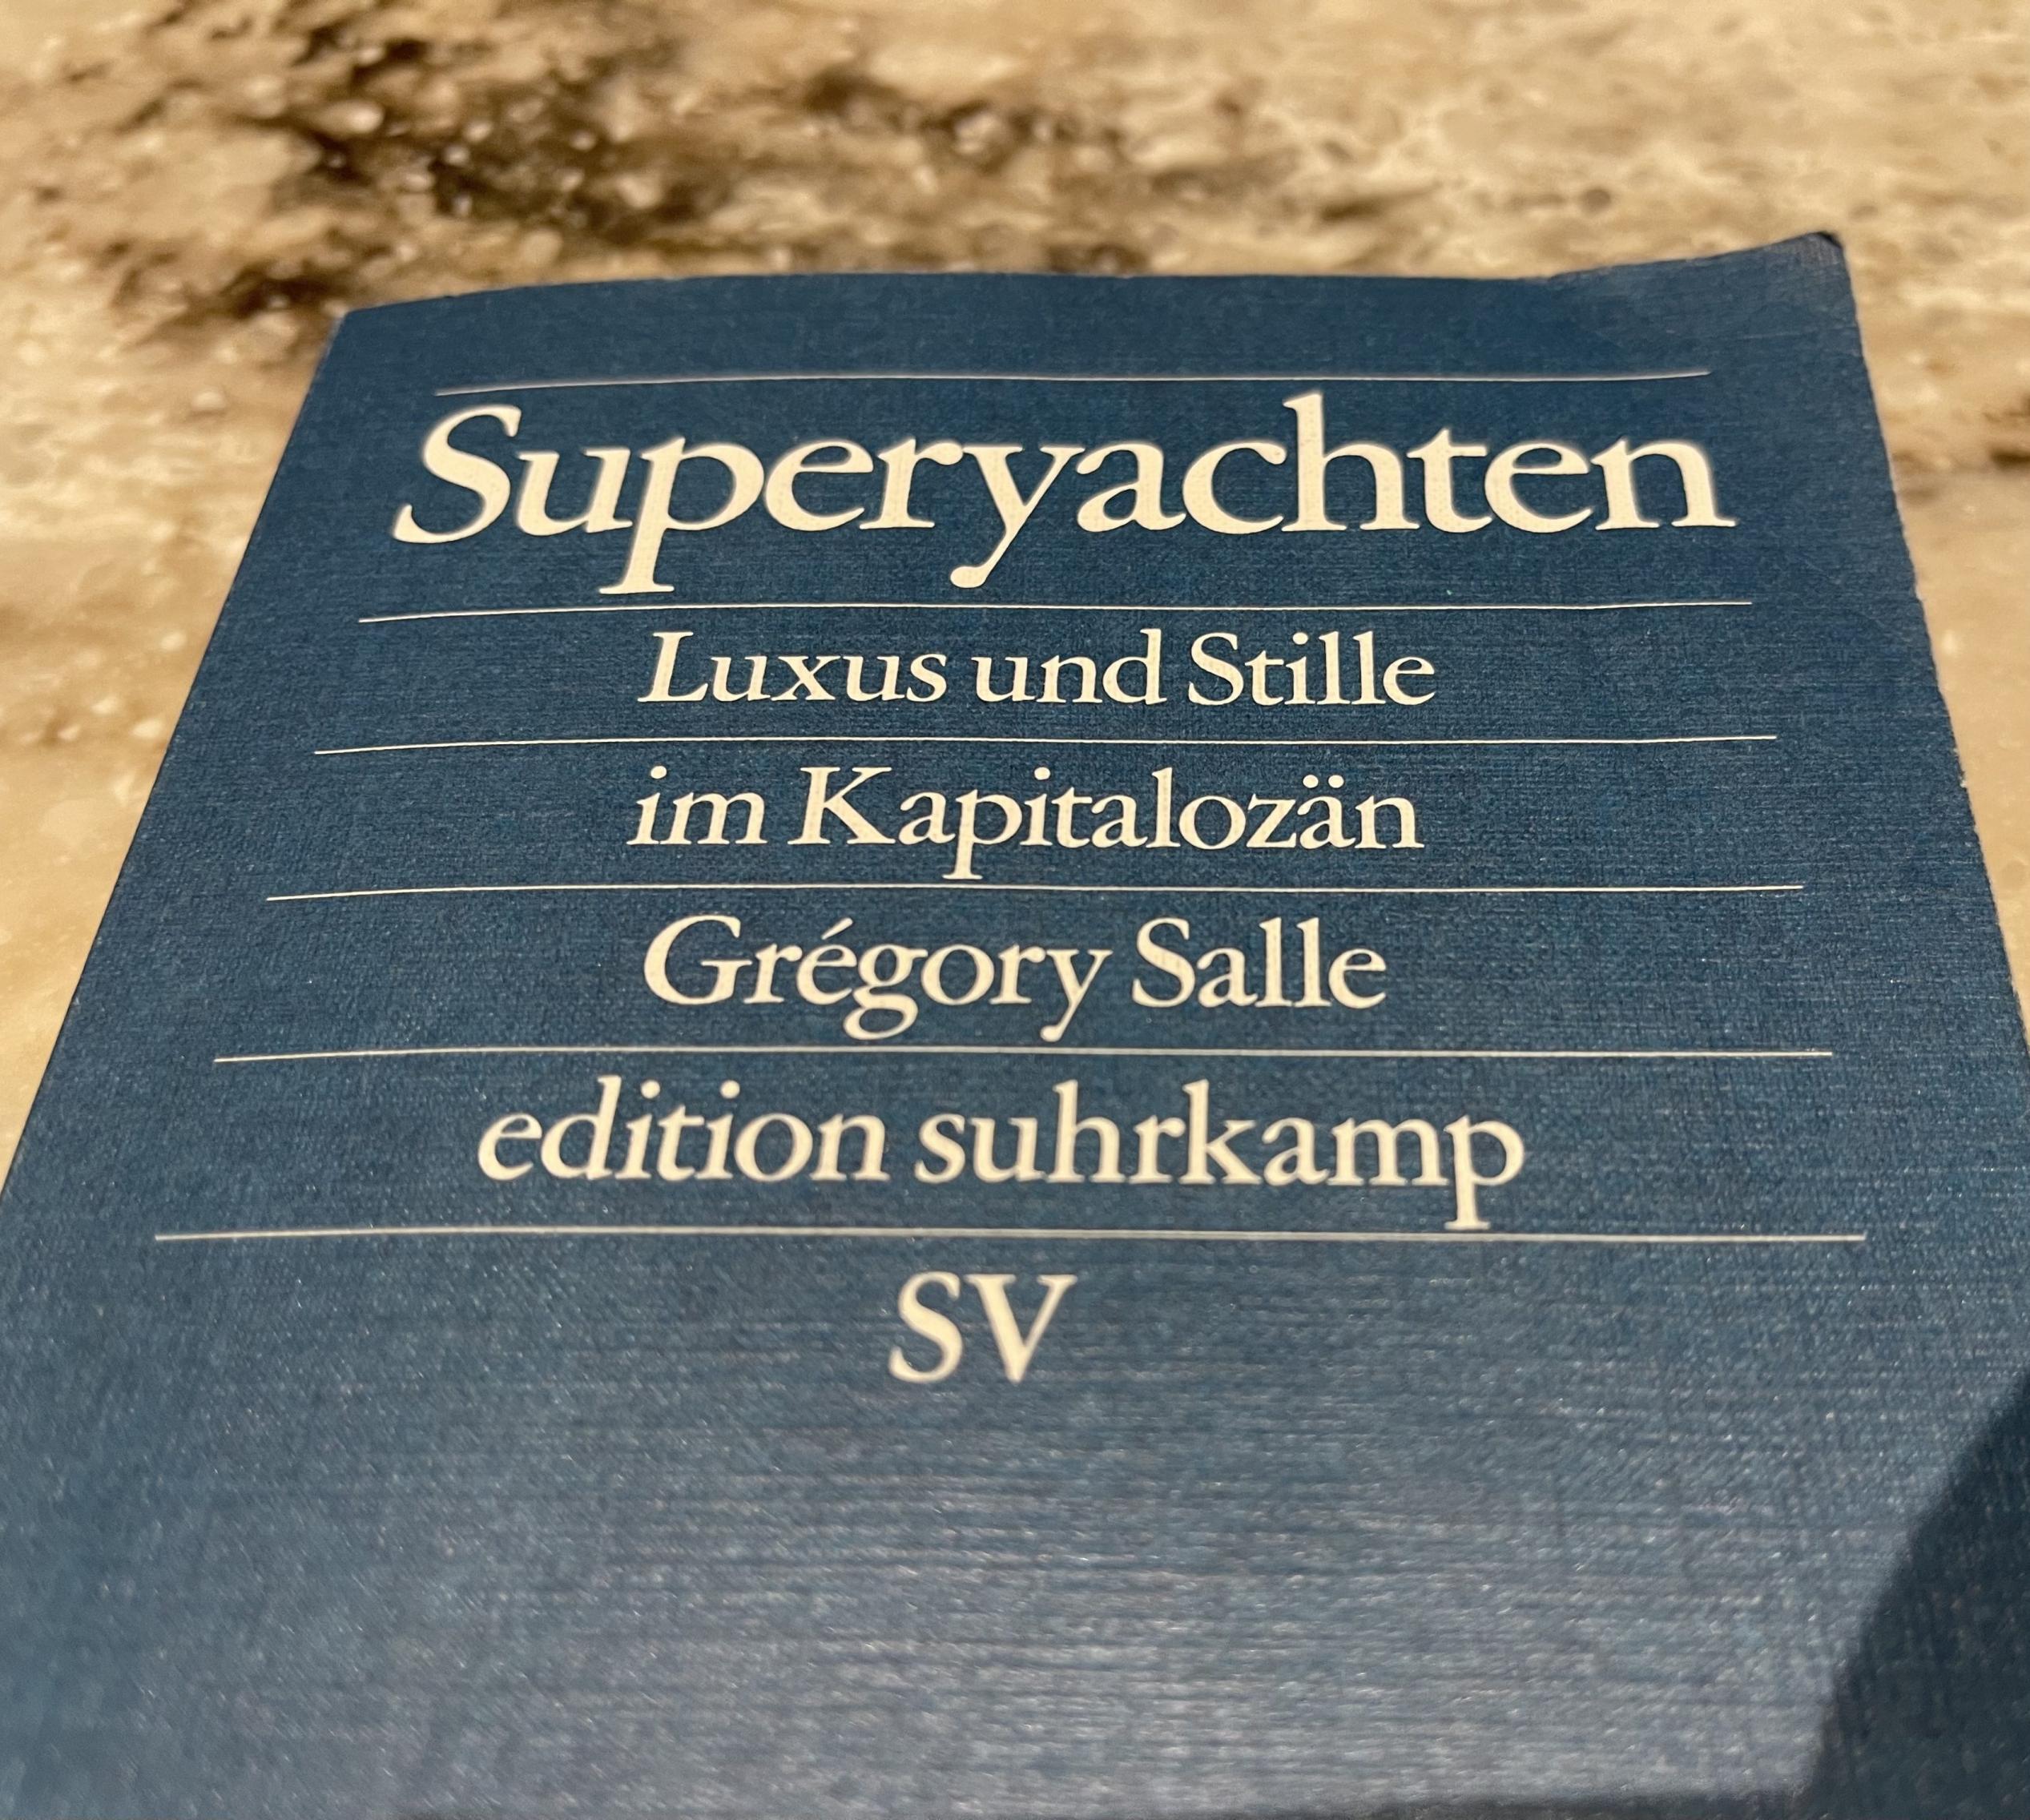 Foto zeigt das Buchcover von Grégory Salles Buch über Superyachten. Die deutsche Ausgabe ist bei Suhrkamp bereits in 5. Auflage erschienen